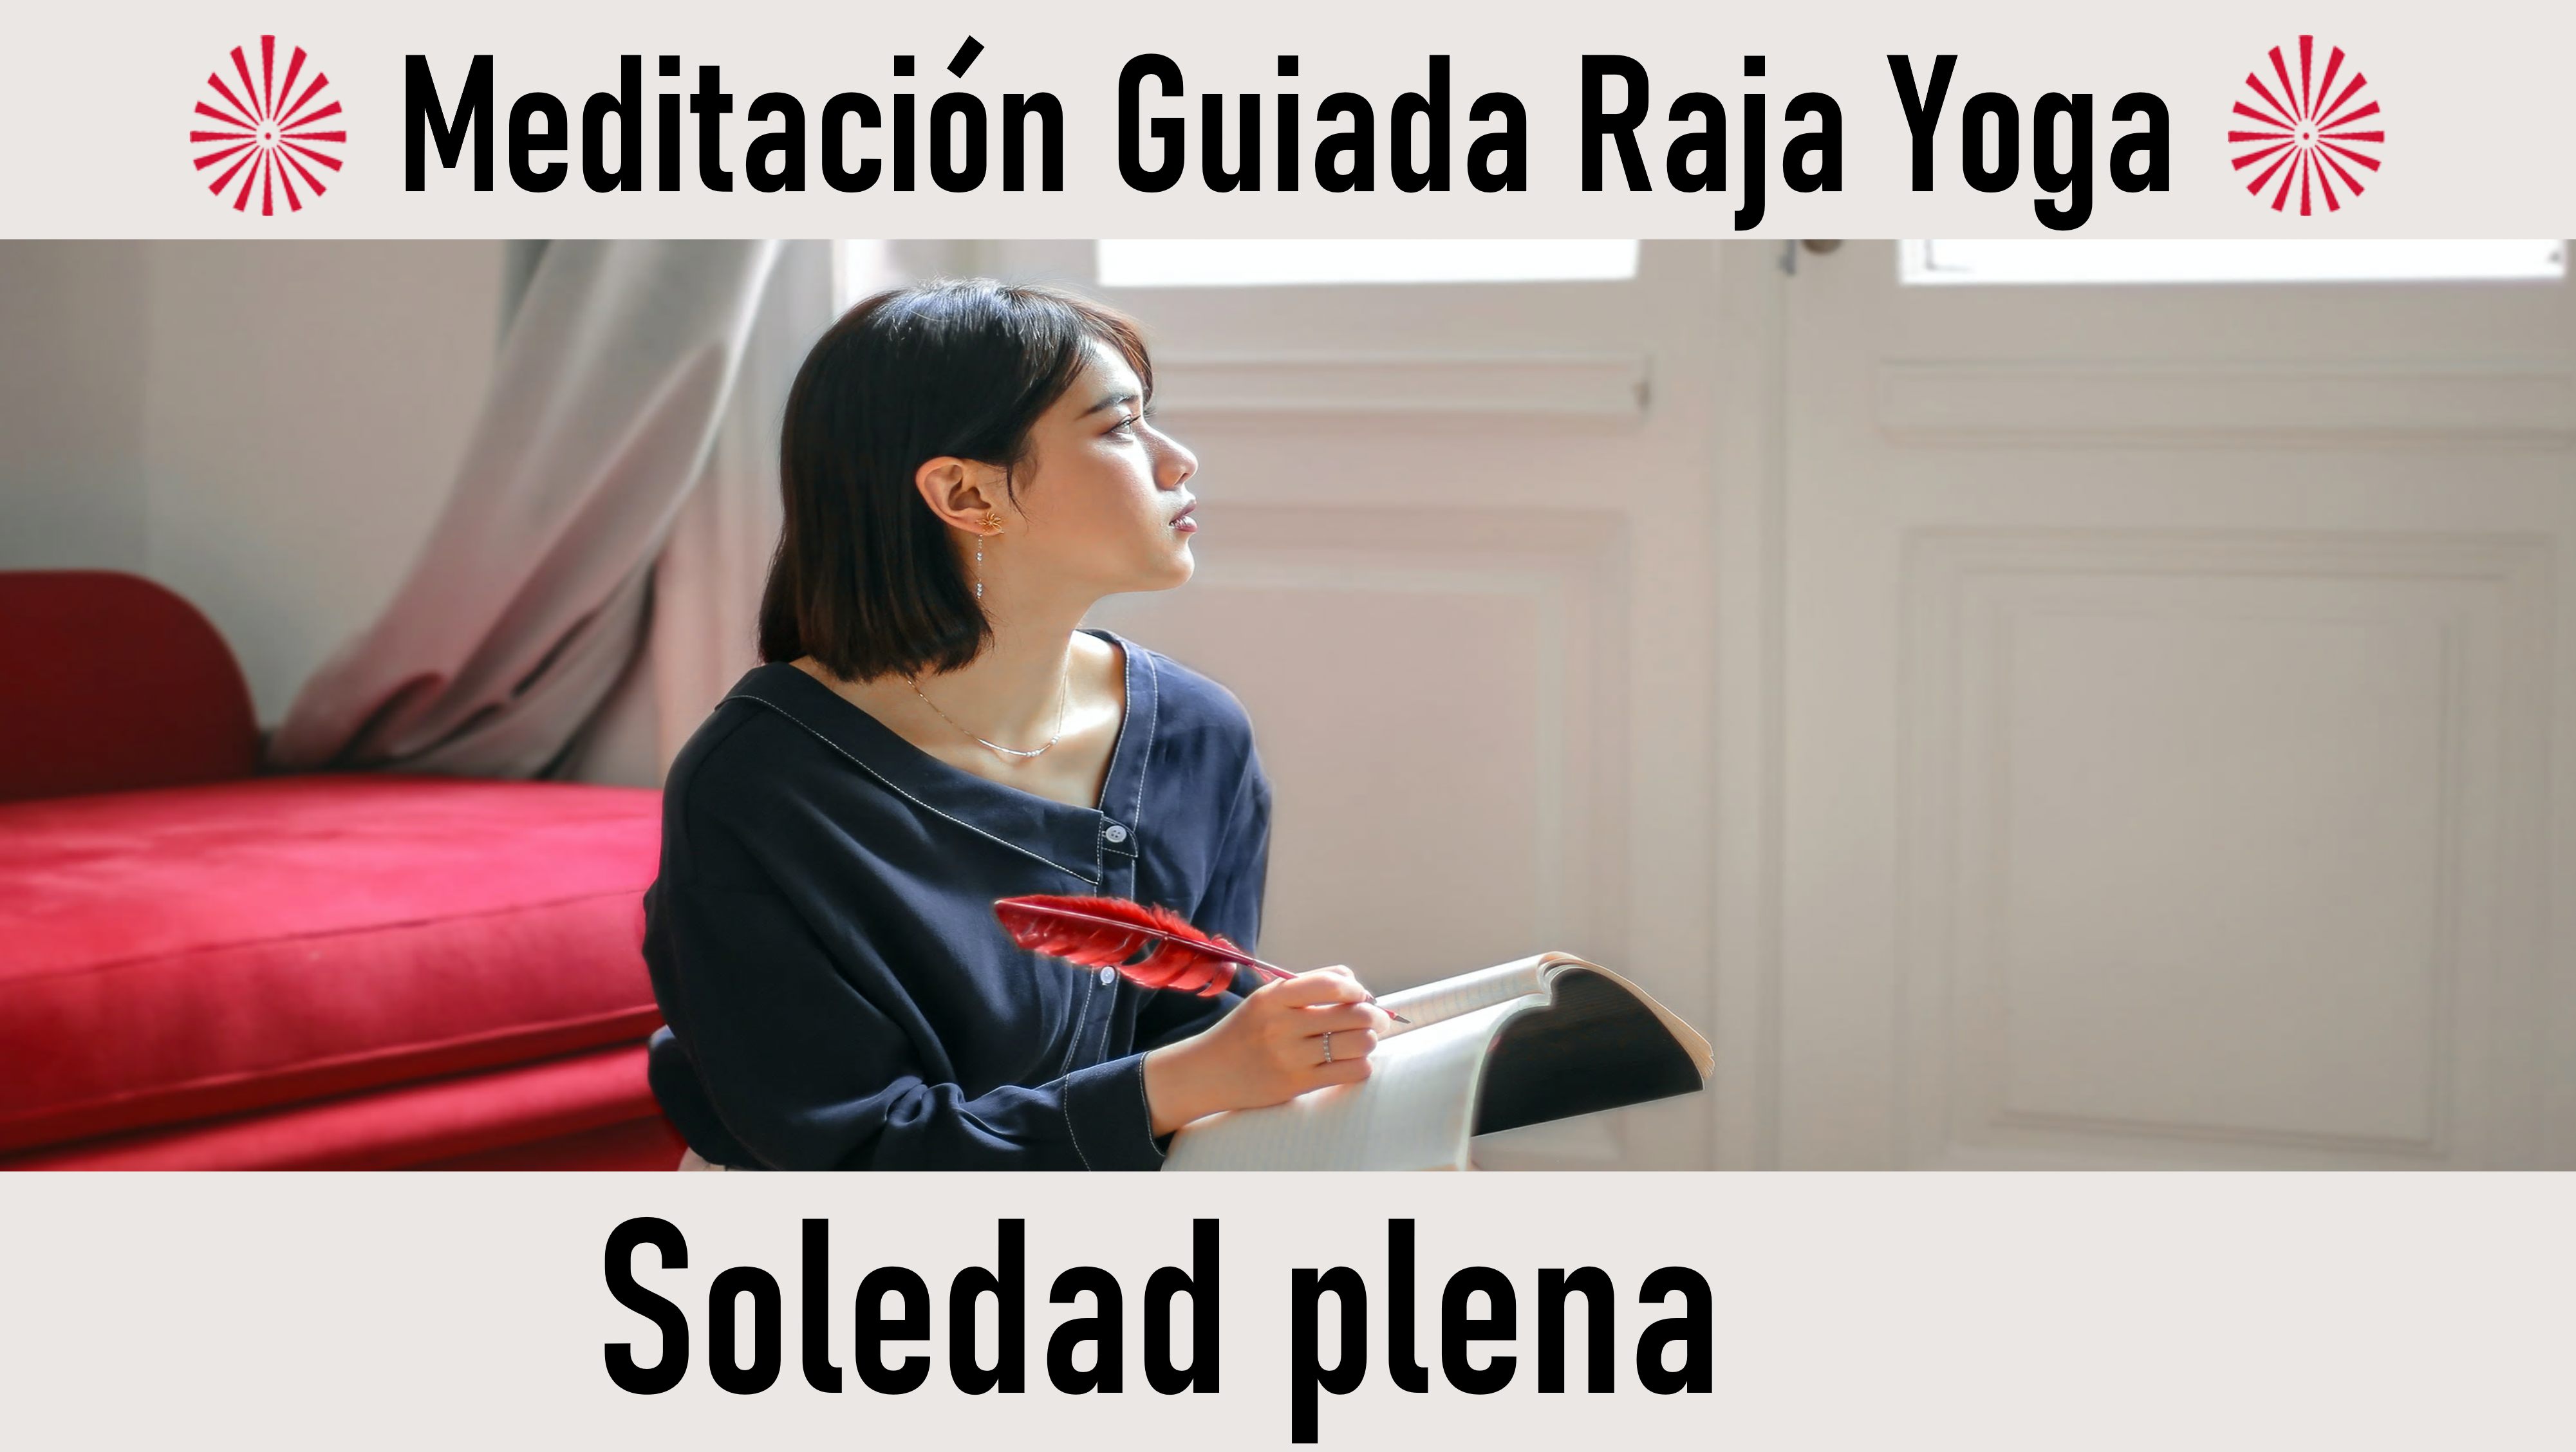 Meditación Raja Yoga: Soledad plena (28 Septiembre 2020) On-line desde Madrid